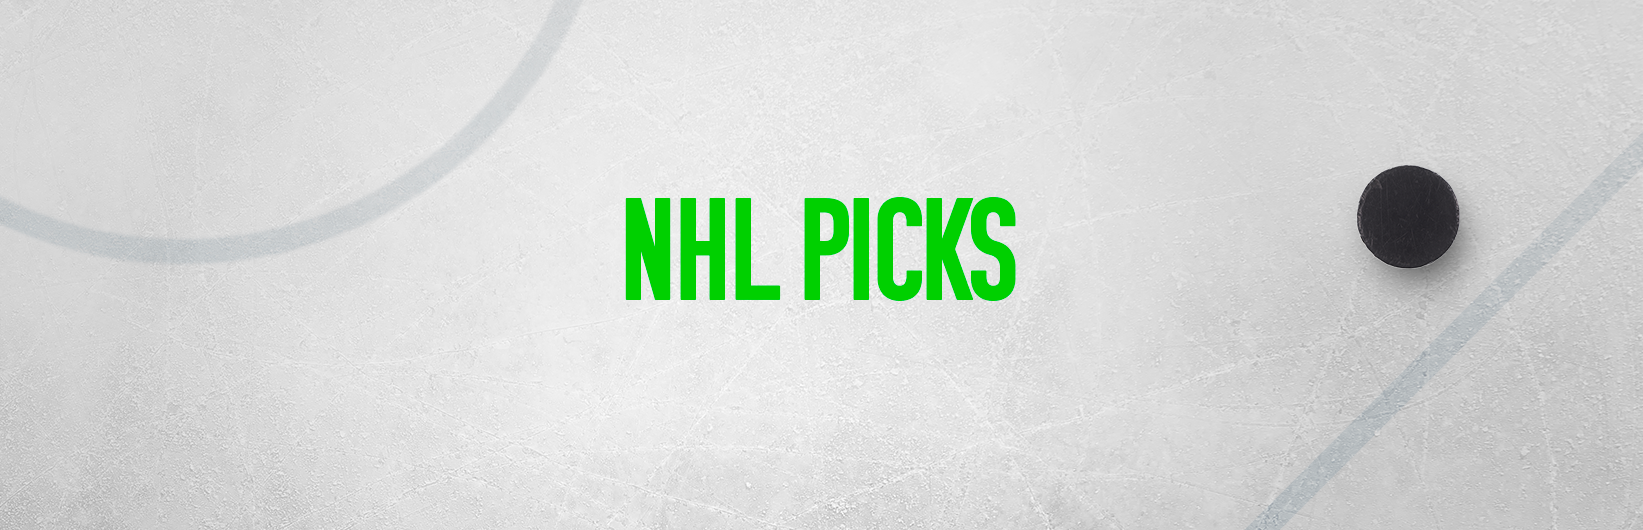 NHL picks: Best bets for Thursday December 28